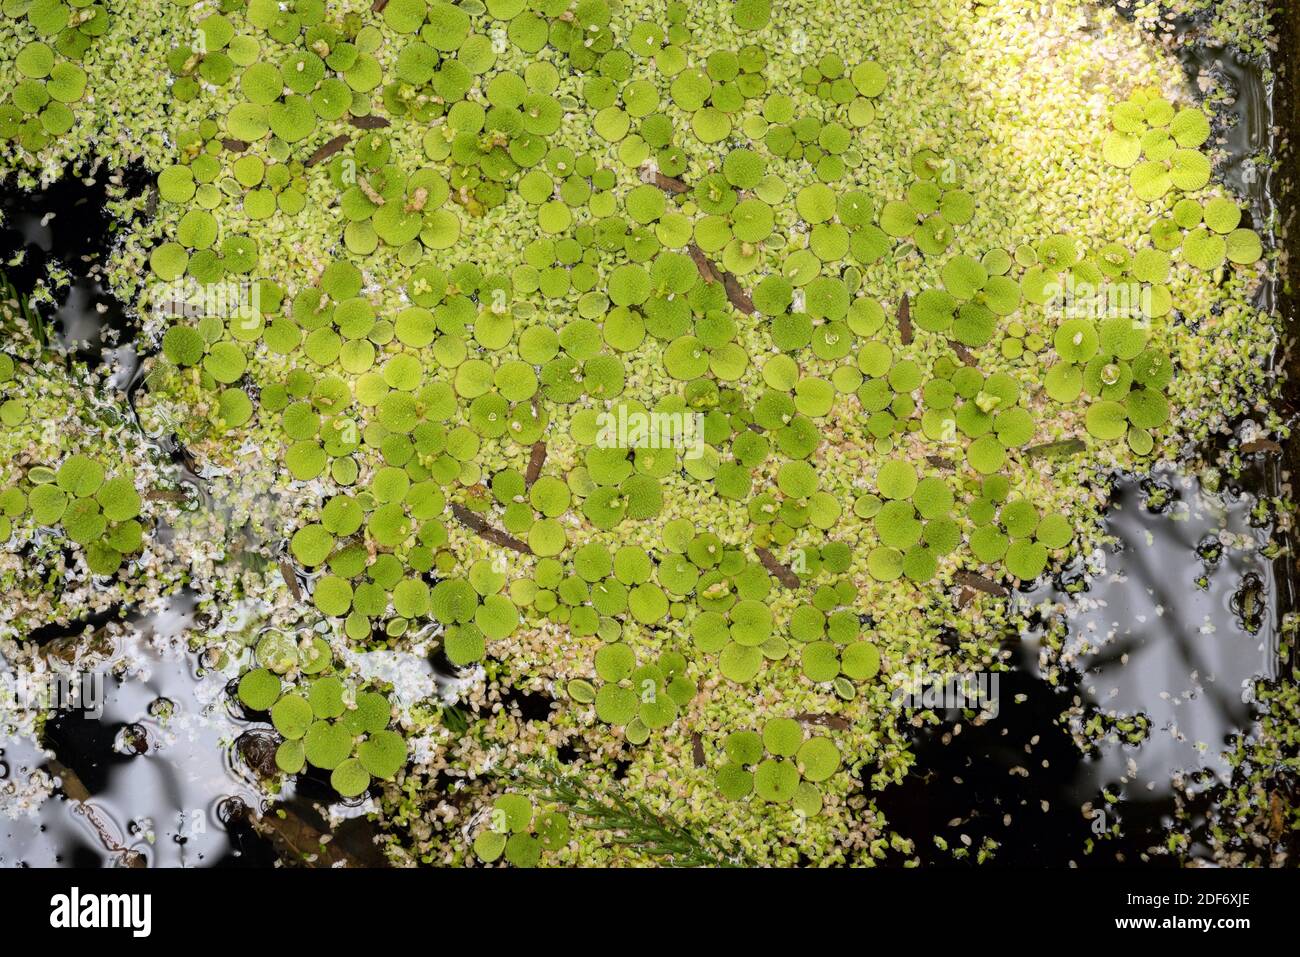 La mousse d'eau Eared (Salvinia auriculata) est une fougère aquatique originaire d'Amérique. Banque D'Images